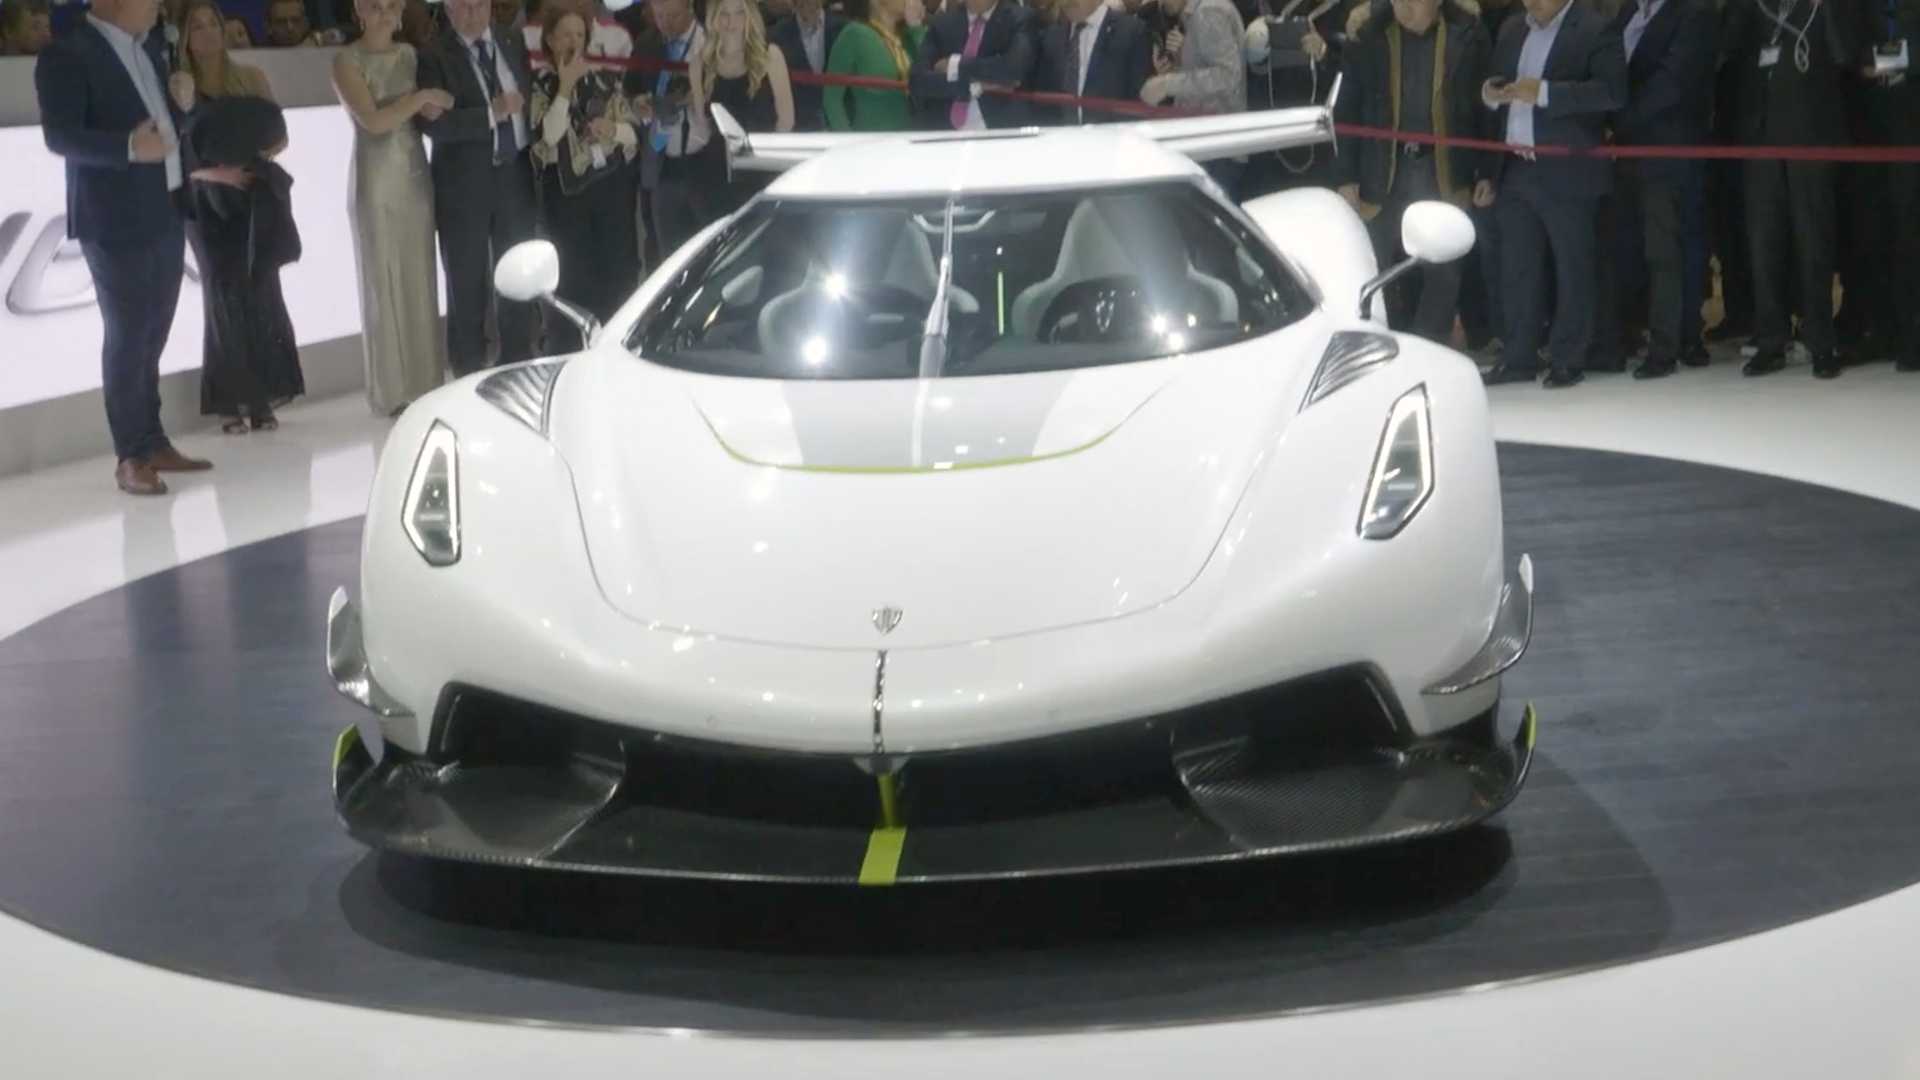 17-کونیگ زگ  جسکو در نمایشگاه خودروی ژنو 2019 رونمایی شد،هاپیر کاری با 482 کیلومتر